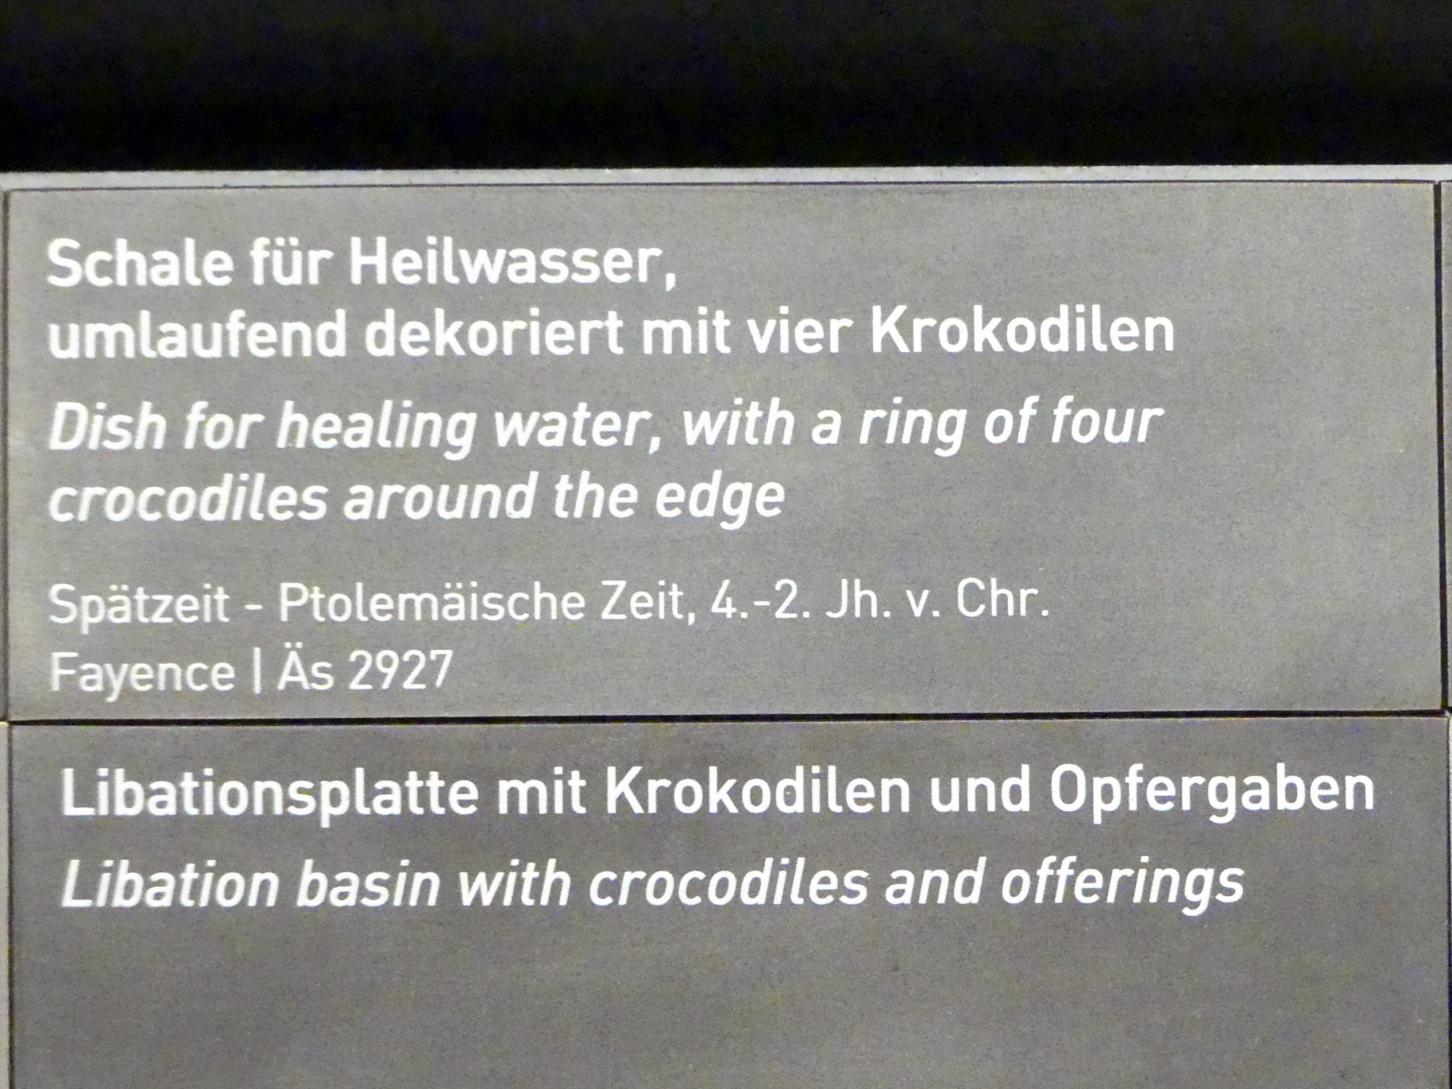 Schale für Heilwasser, umlaufend dekoriert mit vier Krokodilen, 400 - 100 v. Chr., Bild 2/2